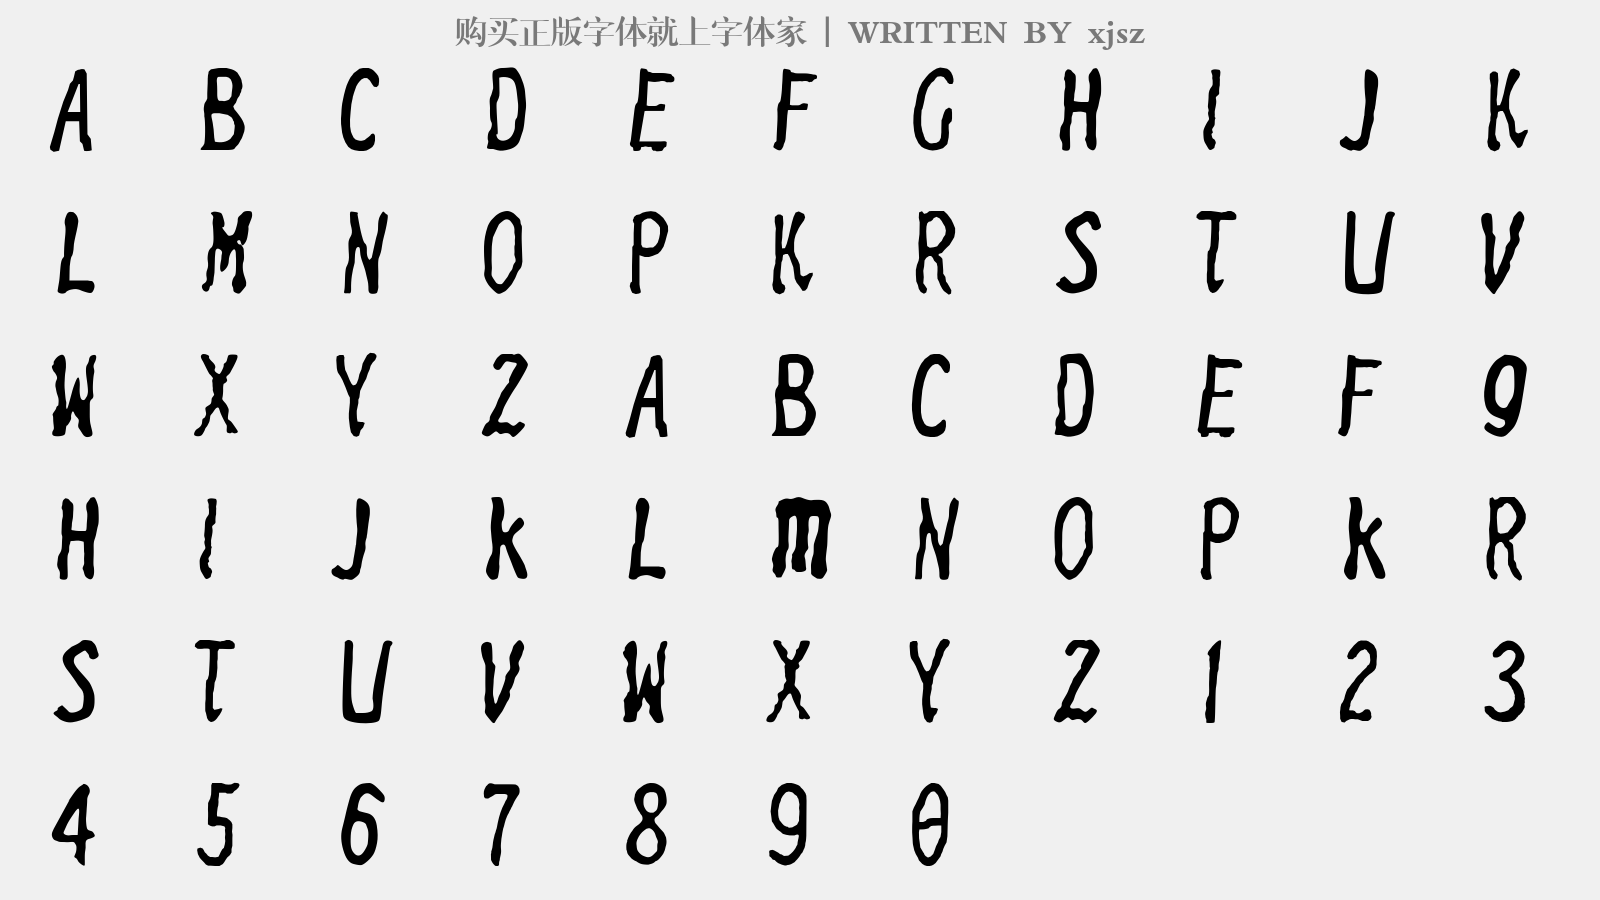 xjsz - 大写字母/小写字母/数字